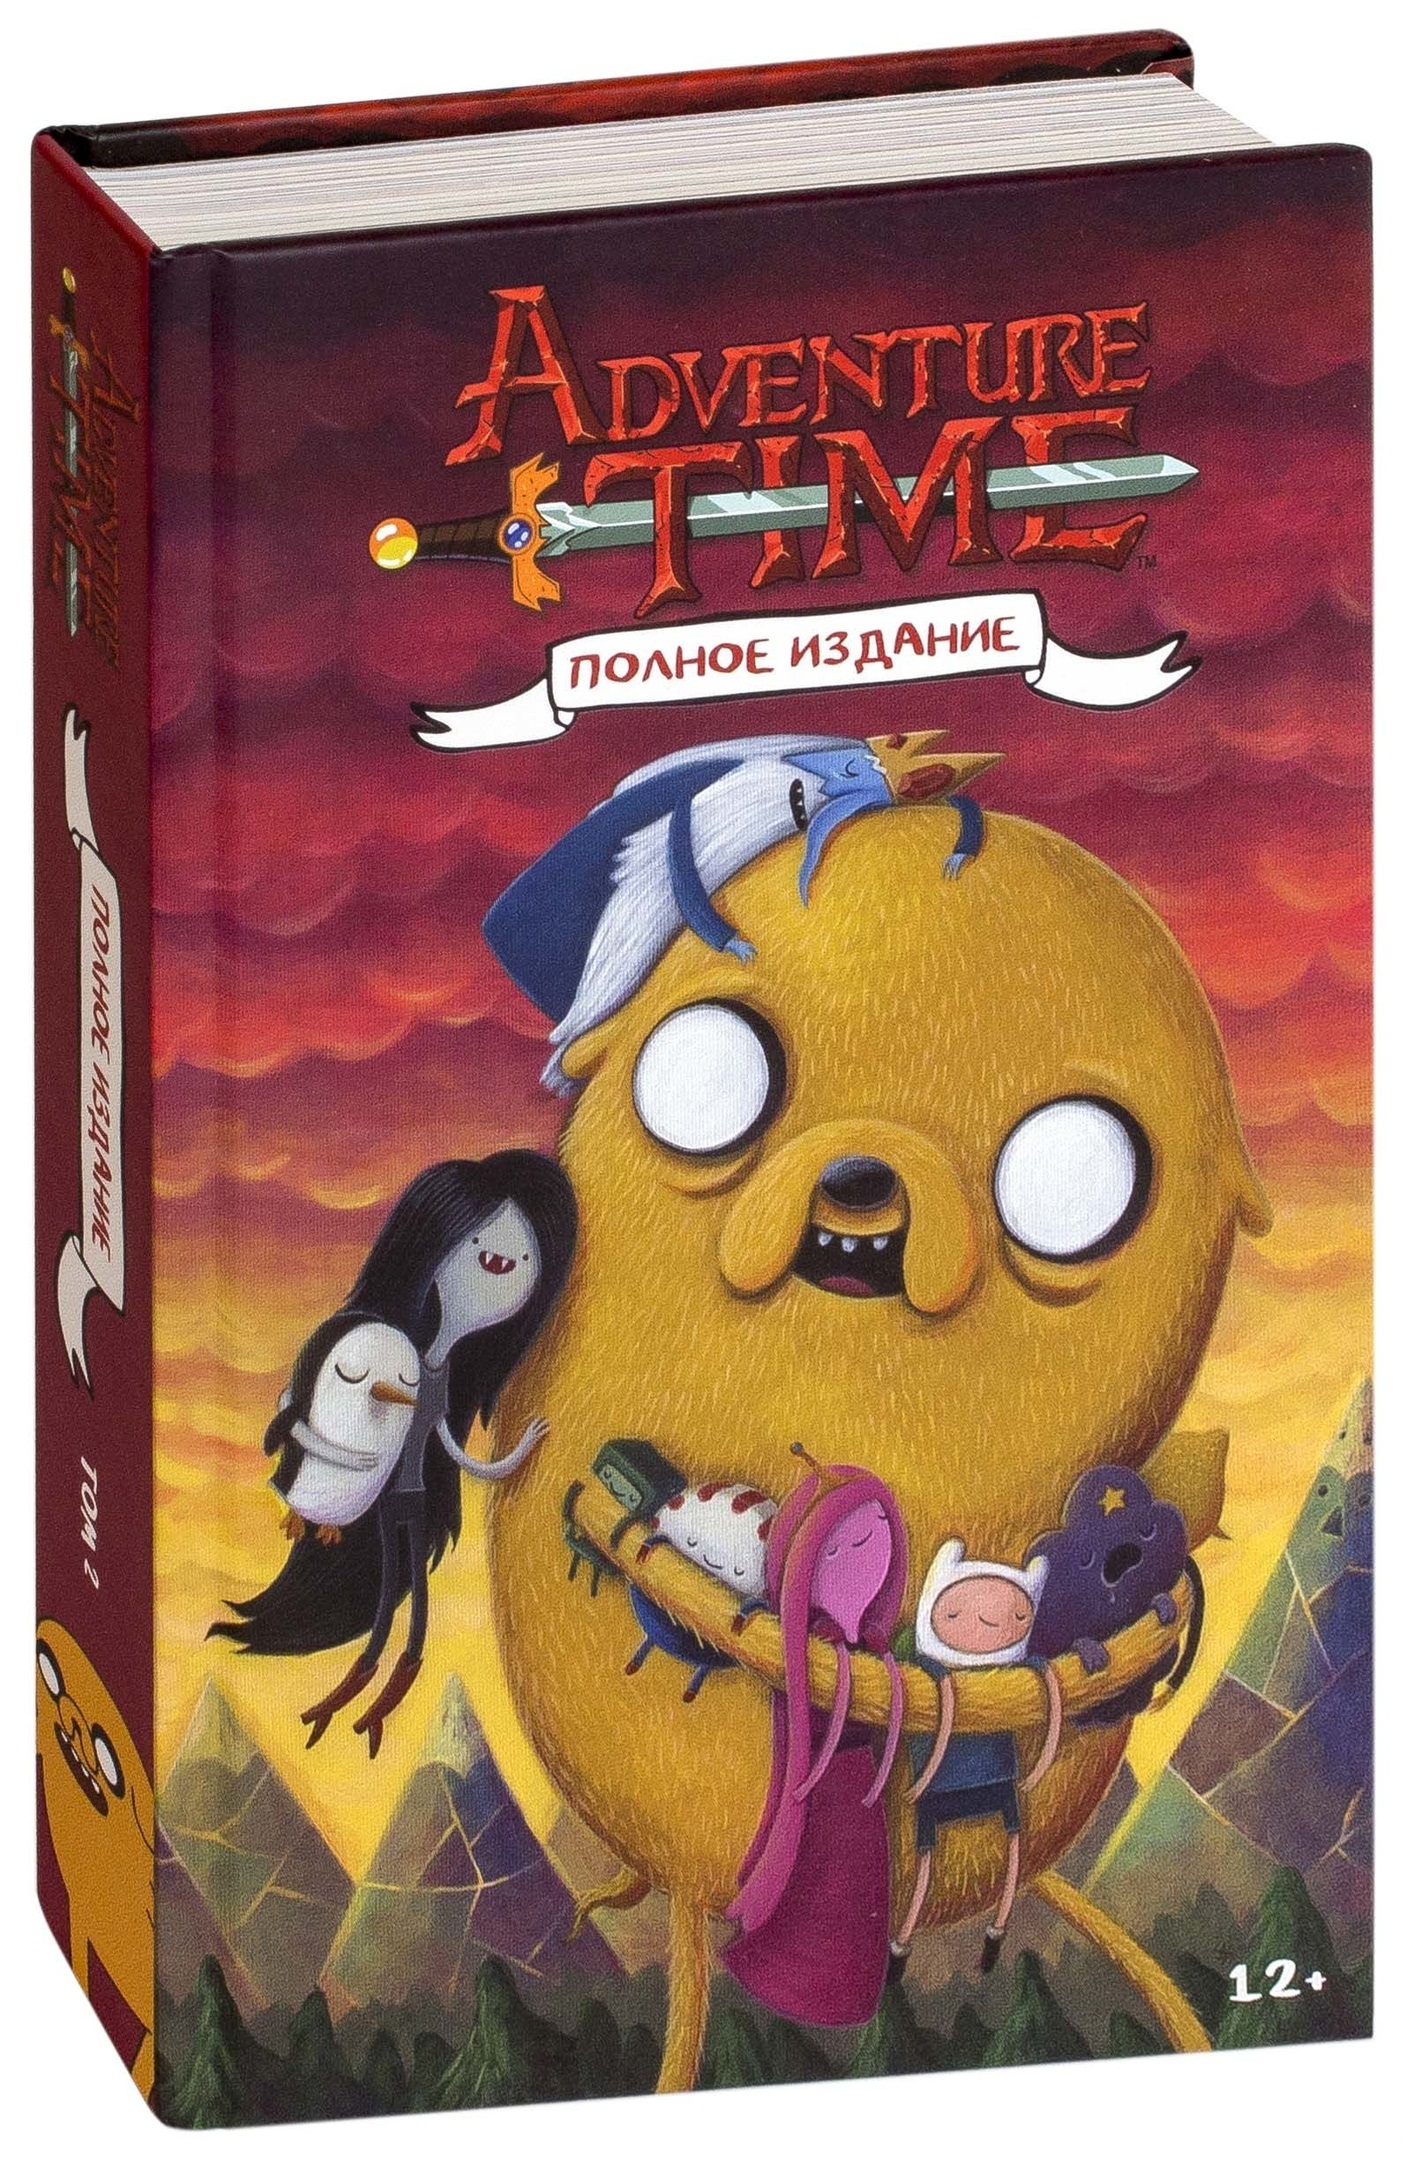 Книги 12 приключения. Adventure time полное издание. Книга Adventure time полное издание. Адвентуре тайм том 2. Время приключений полное издание том 2.